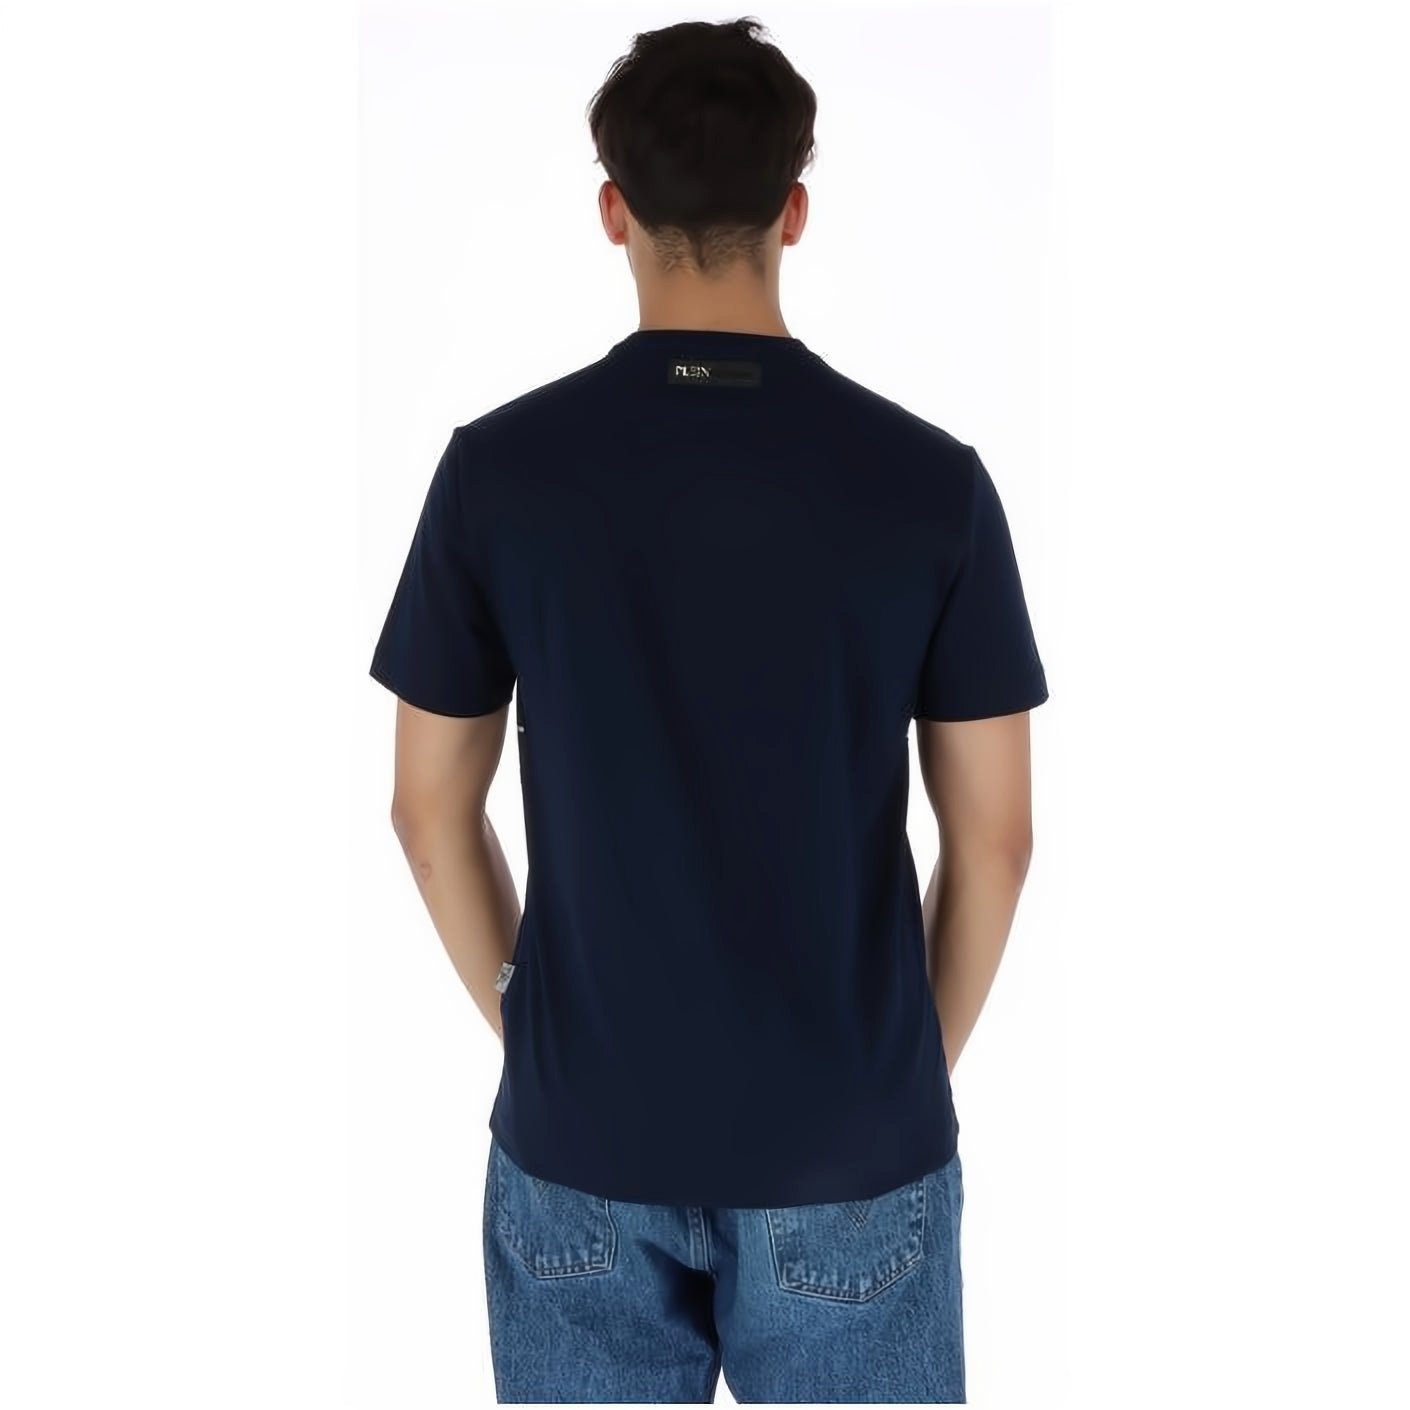 PLEIN SPORT T-Shirt Tragekomfort, Farbauswahl NECK Look, ROUND hoher Stylischer vielfältige